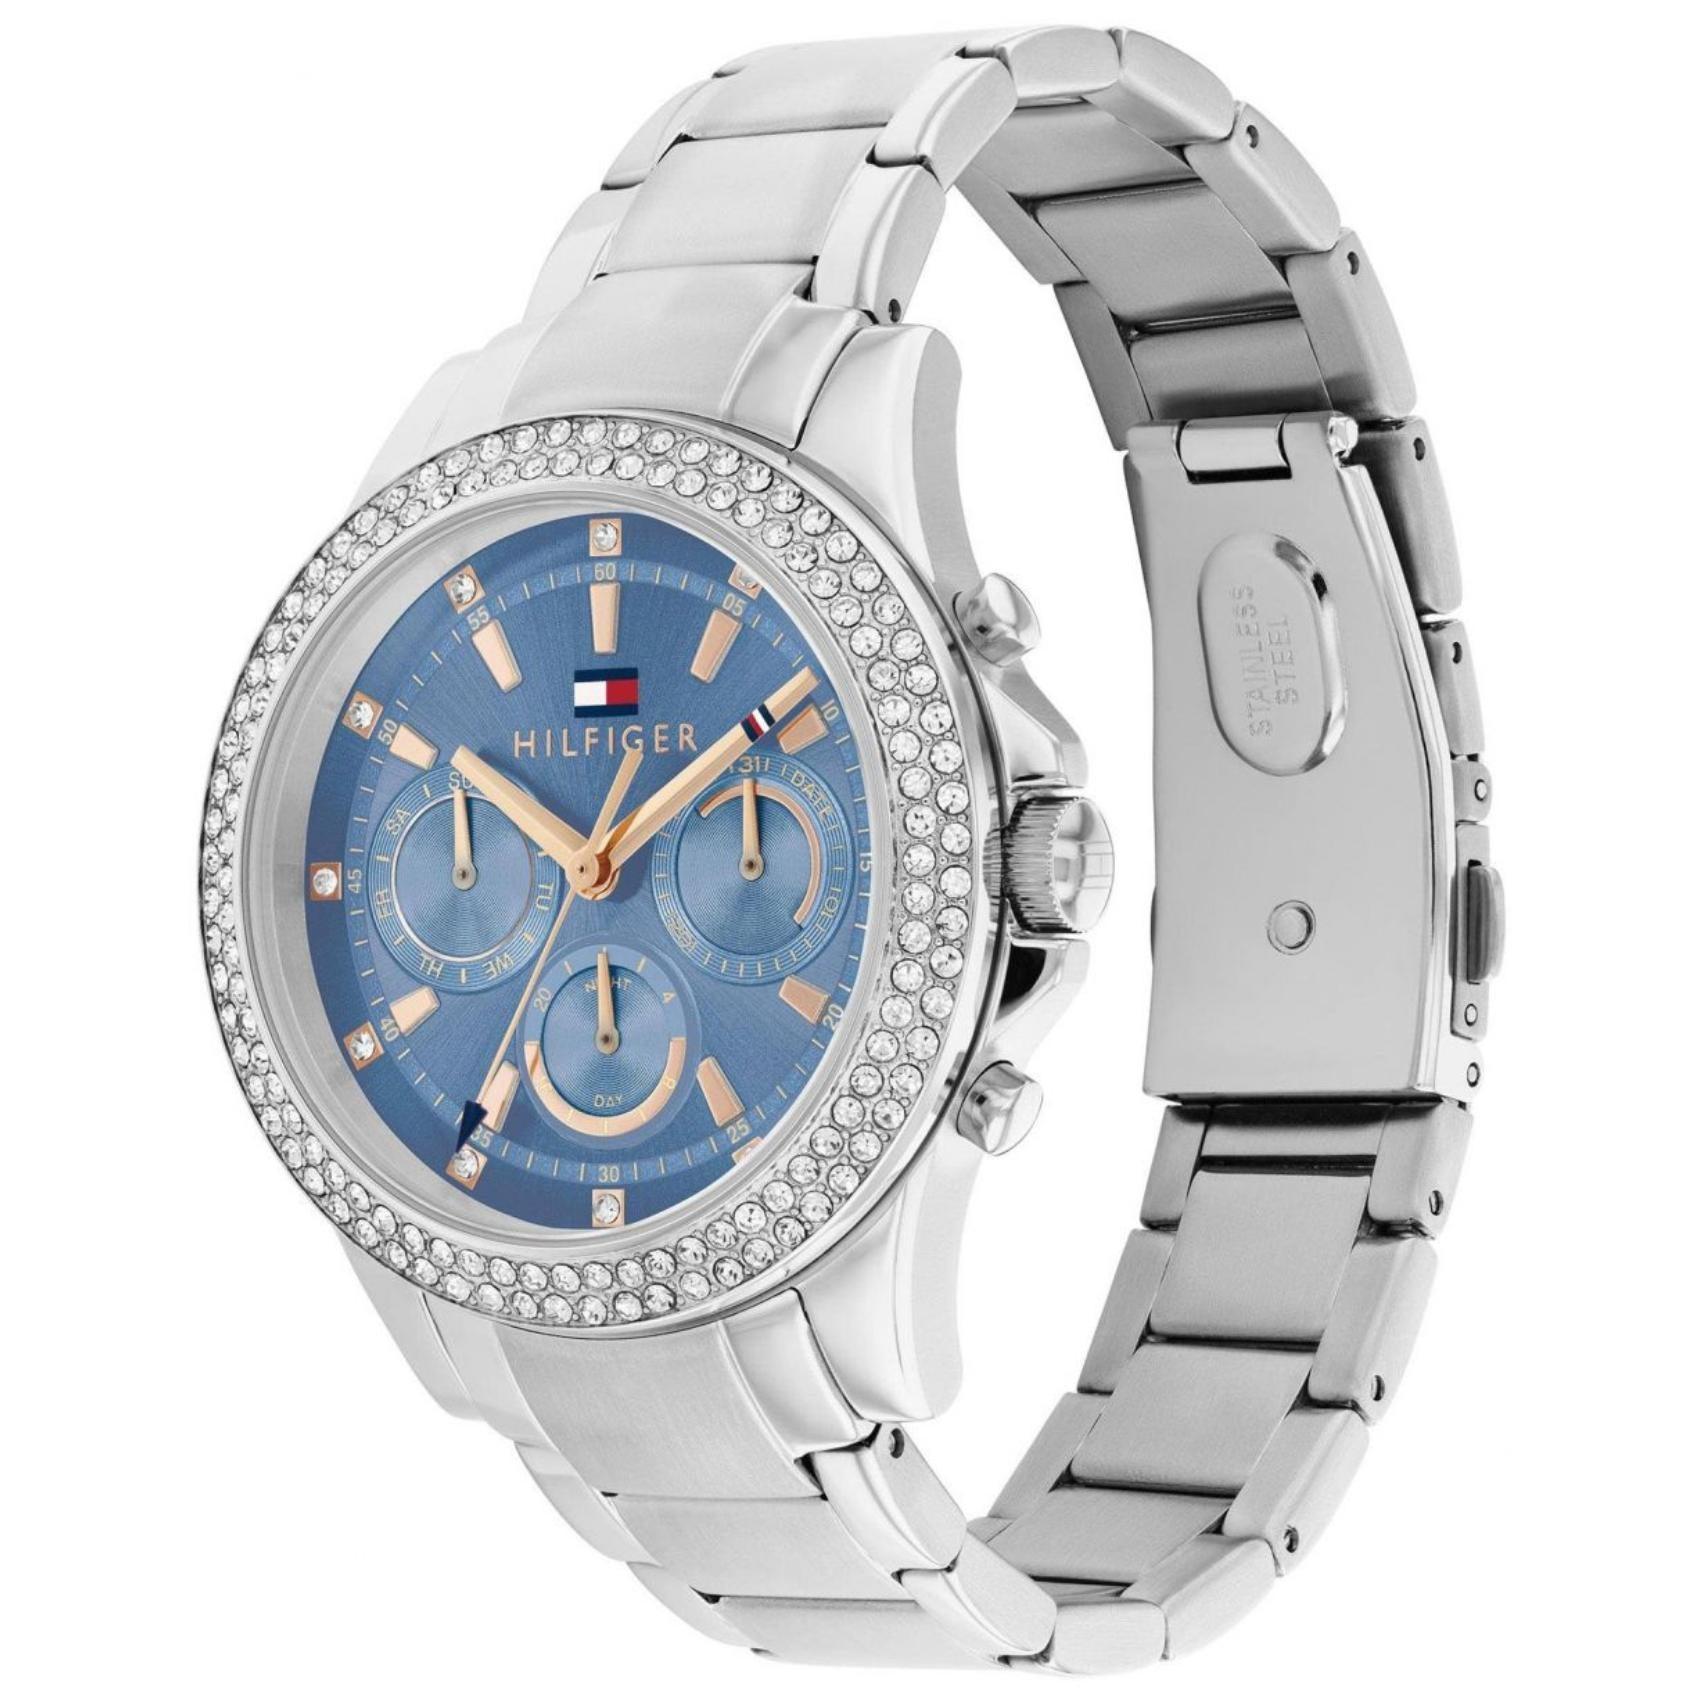 Γυναικείο ρολόι Tommy Hilfiger Haven 1782690 με ασημί ατσάλινο μπρασελέ και μπλε καντράν διαμέτρου 38mm με ημέρα-ημερομηνία και ζιργκόν.